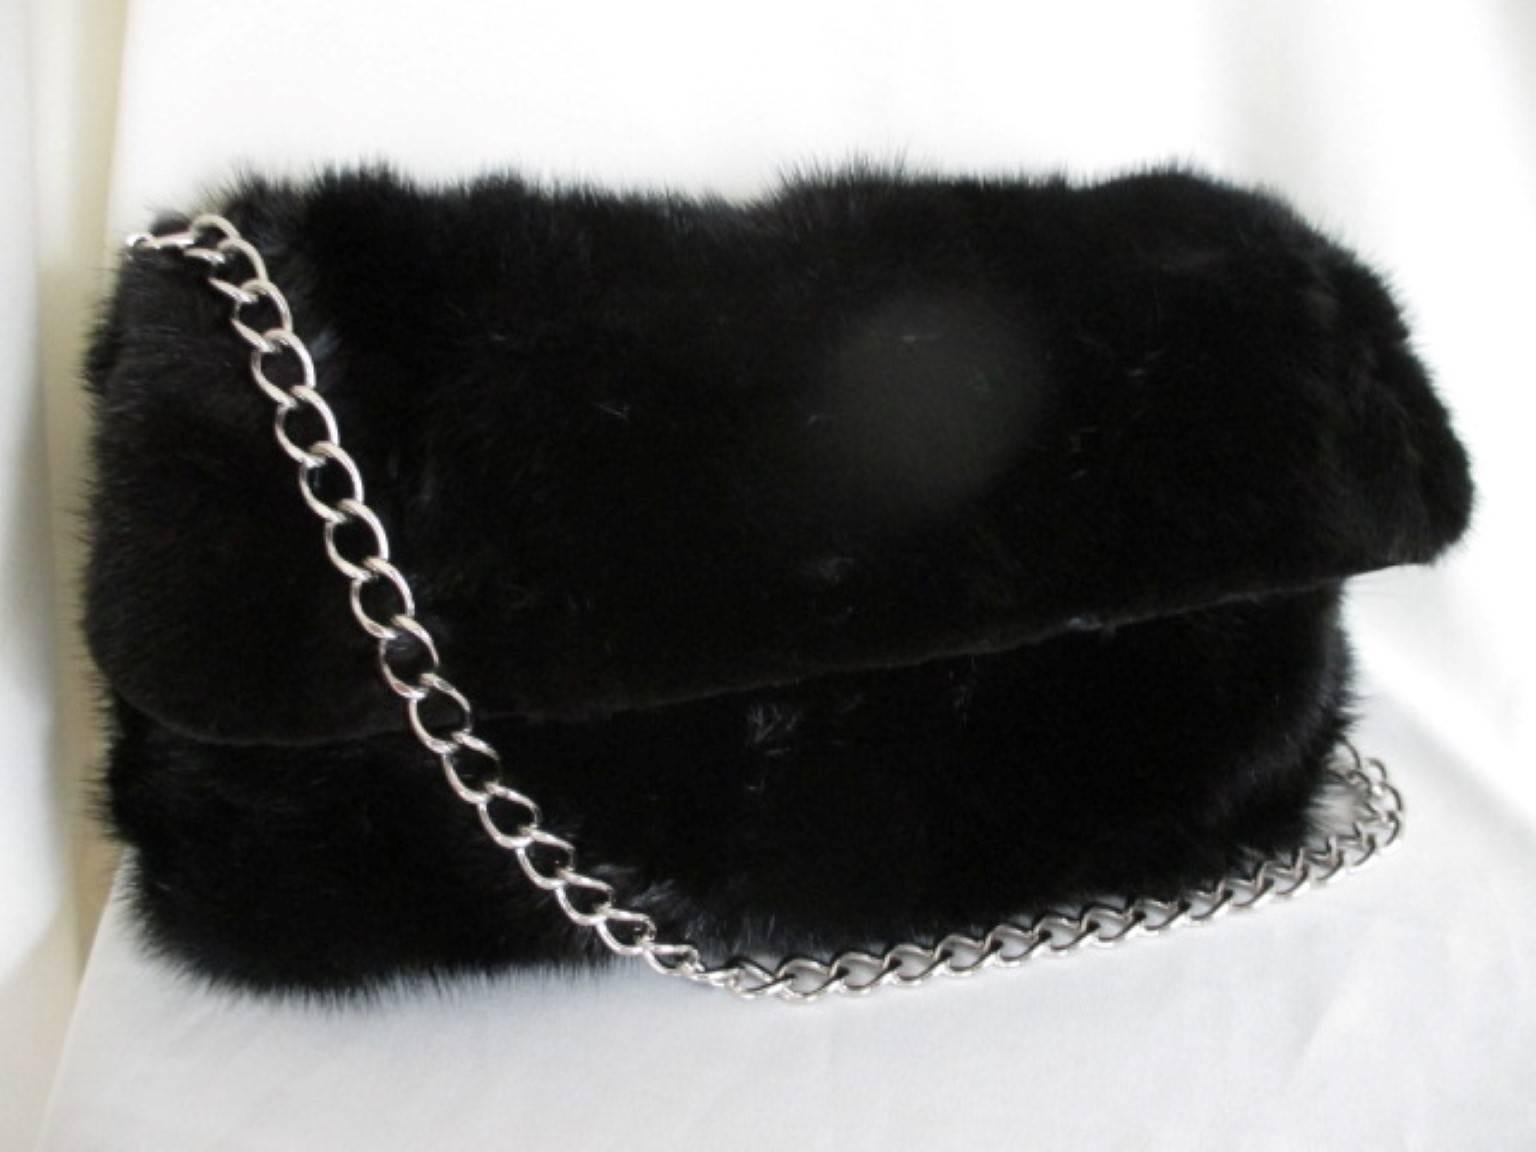 Women's or Men's Black Mink Fur Bag Clutch For Sale